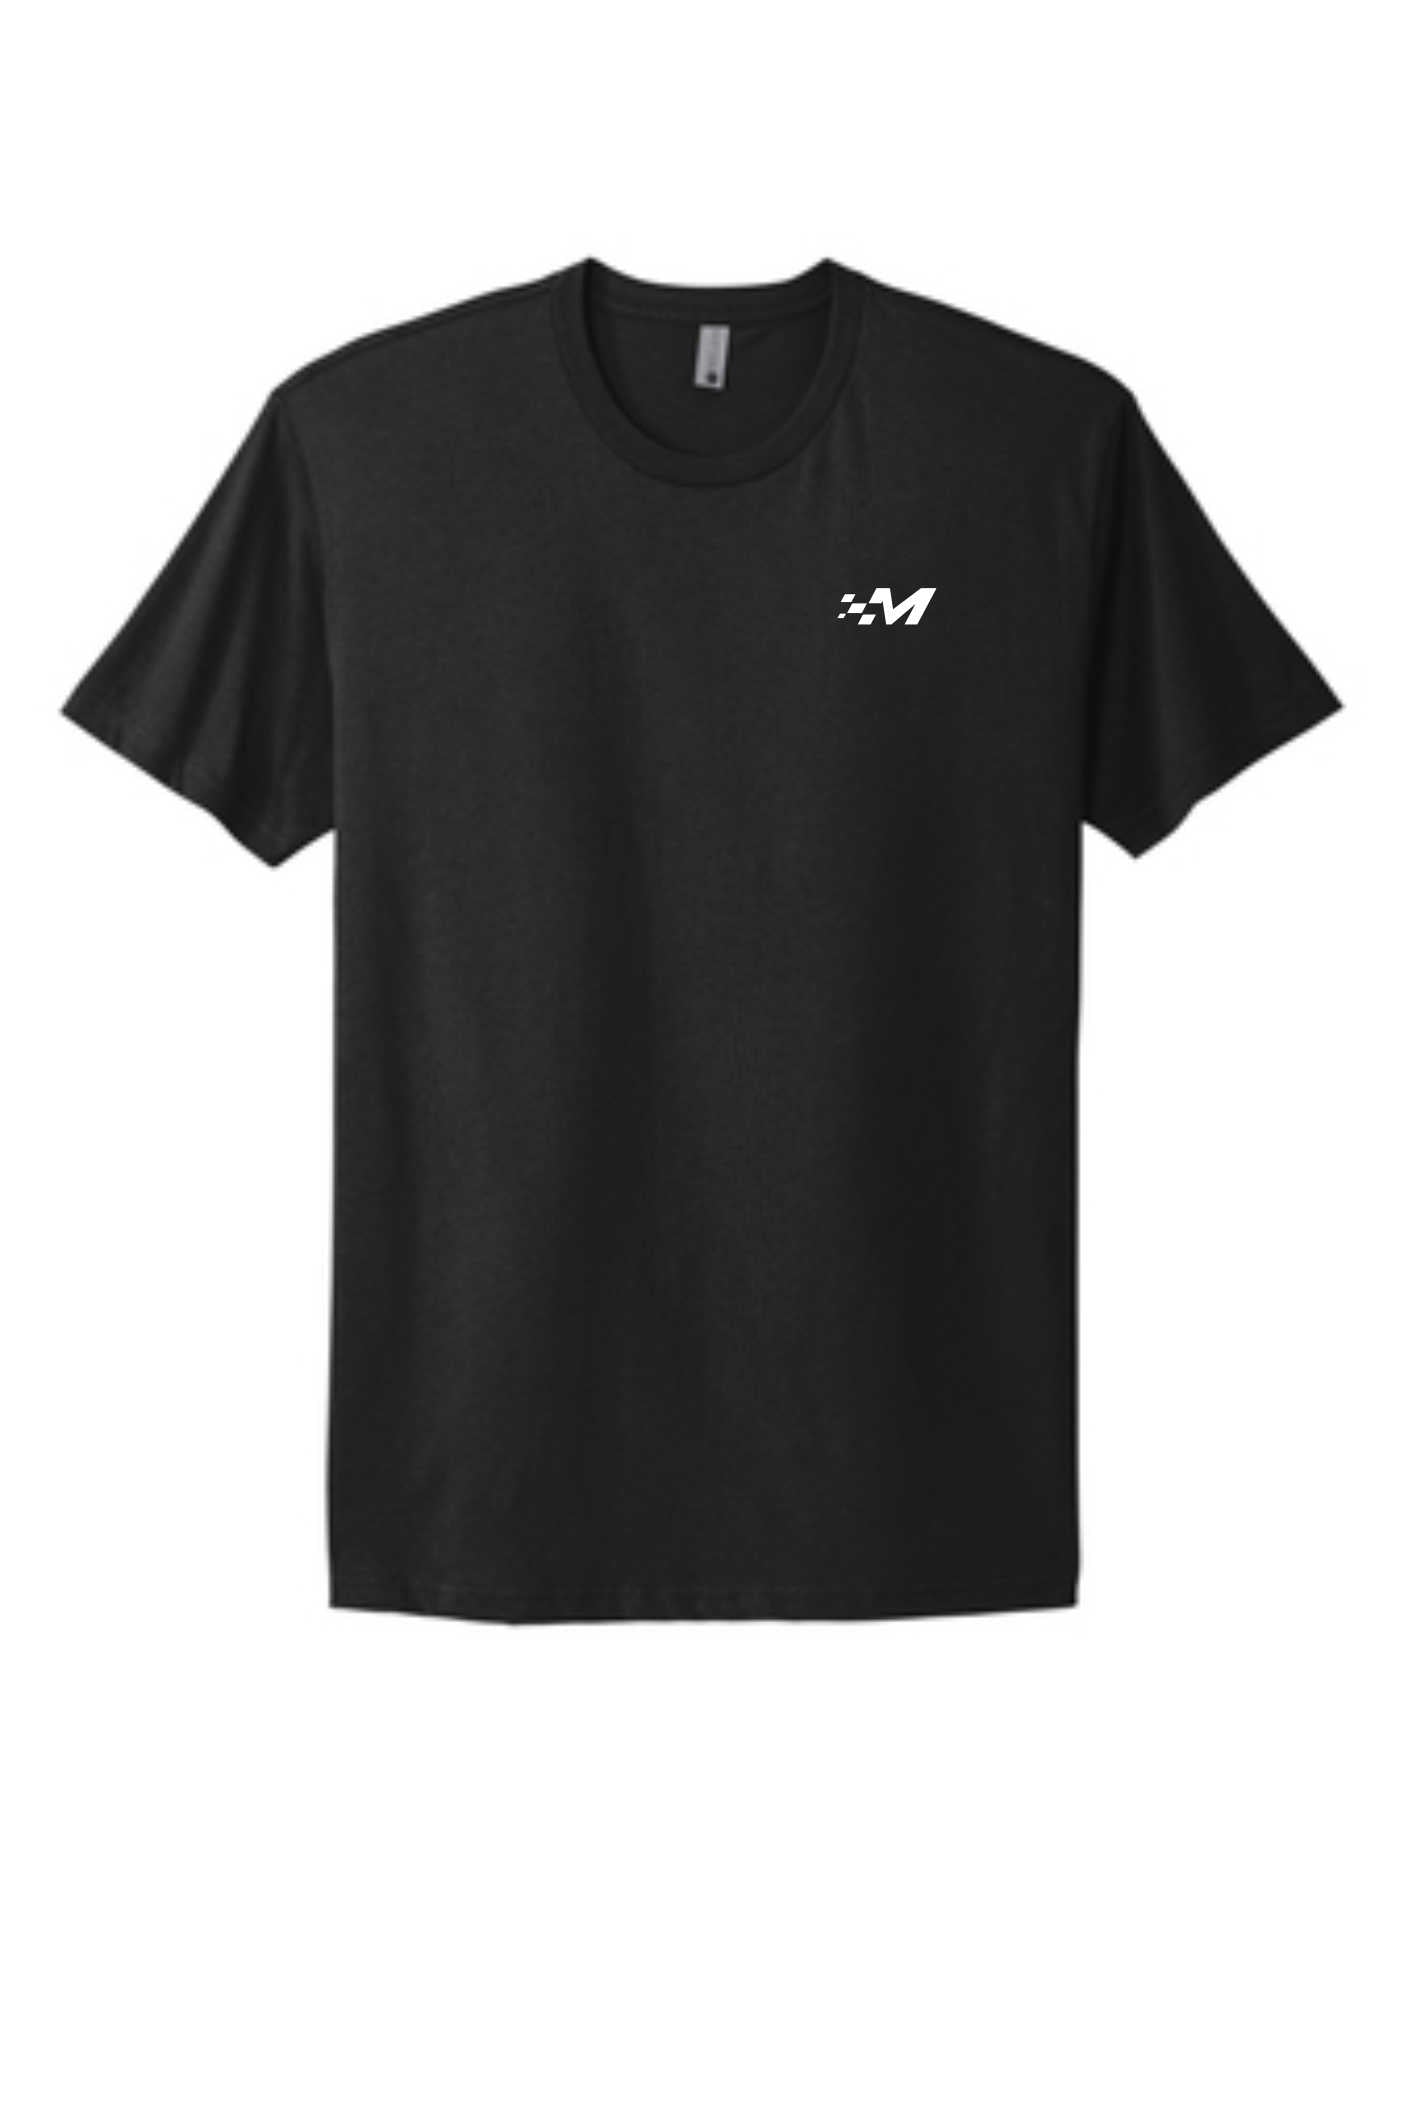 FIR "Wheels" -2023 Design - Short Sleeve T-Shirt - Black